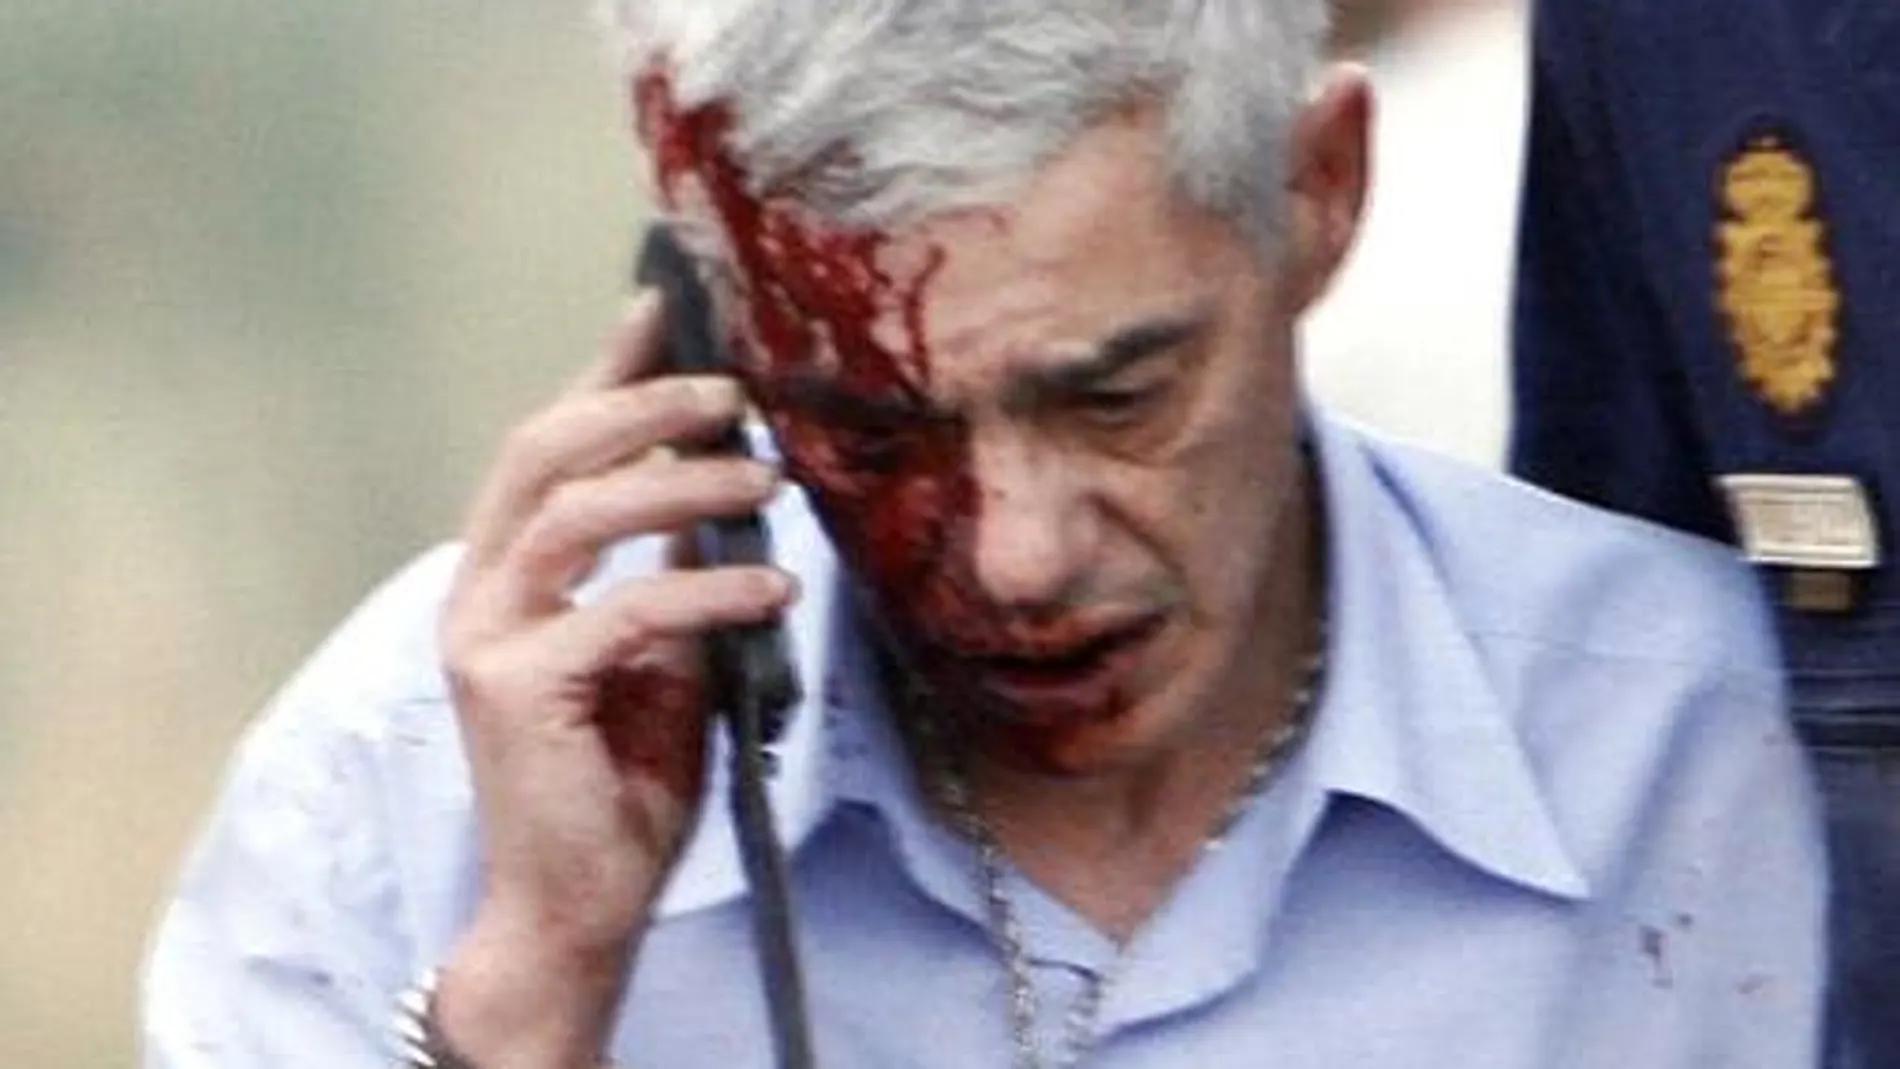 En la imagen, el maqunista, Francisco José Garzón, herido tras el accidente, habla por el móvil